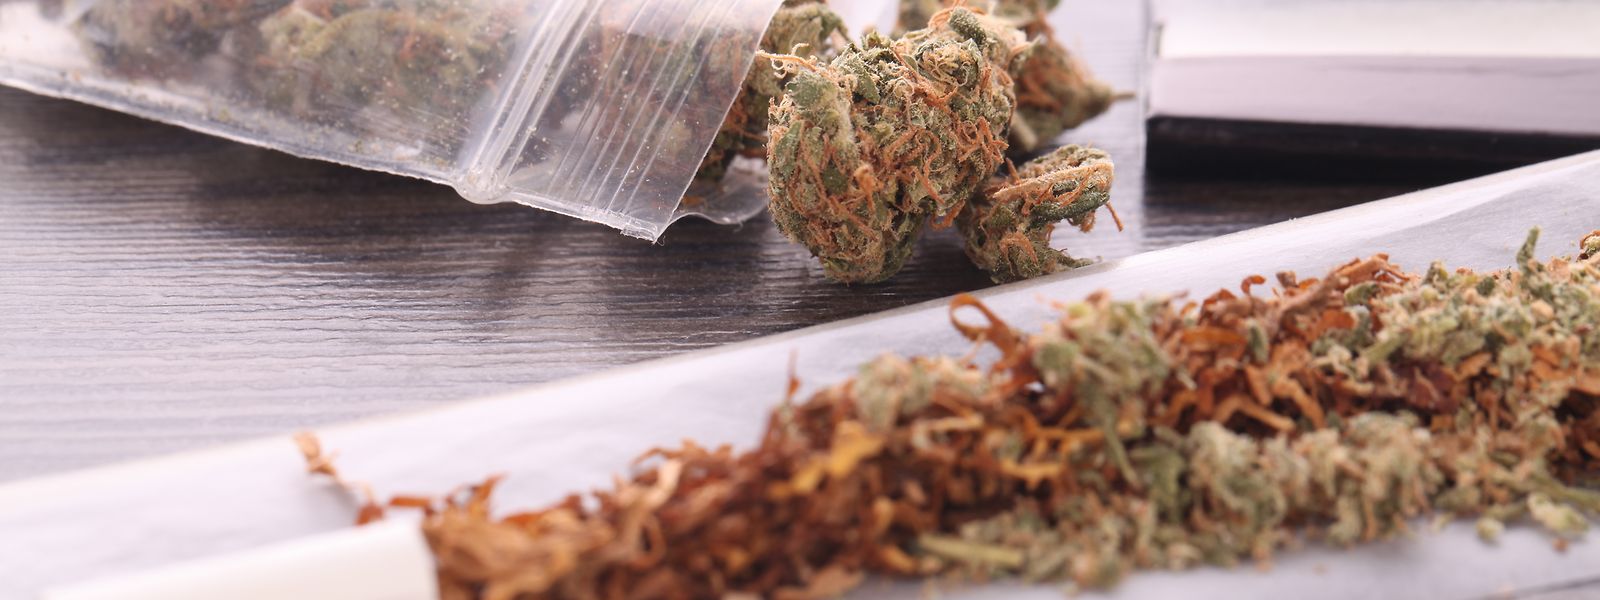 En 2020, la police grand-ducale a constaté 4.614 infractions aux stupéfiants, la plupart concernaient de la détention de cannabis.